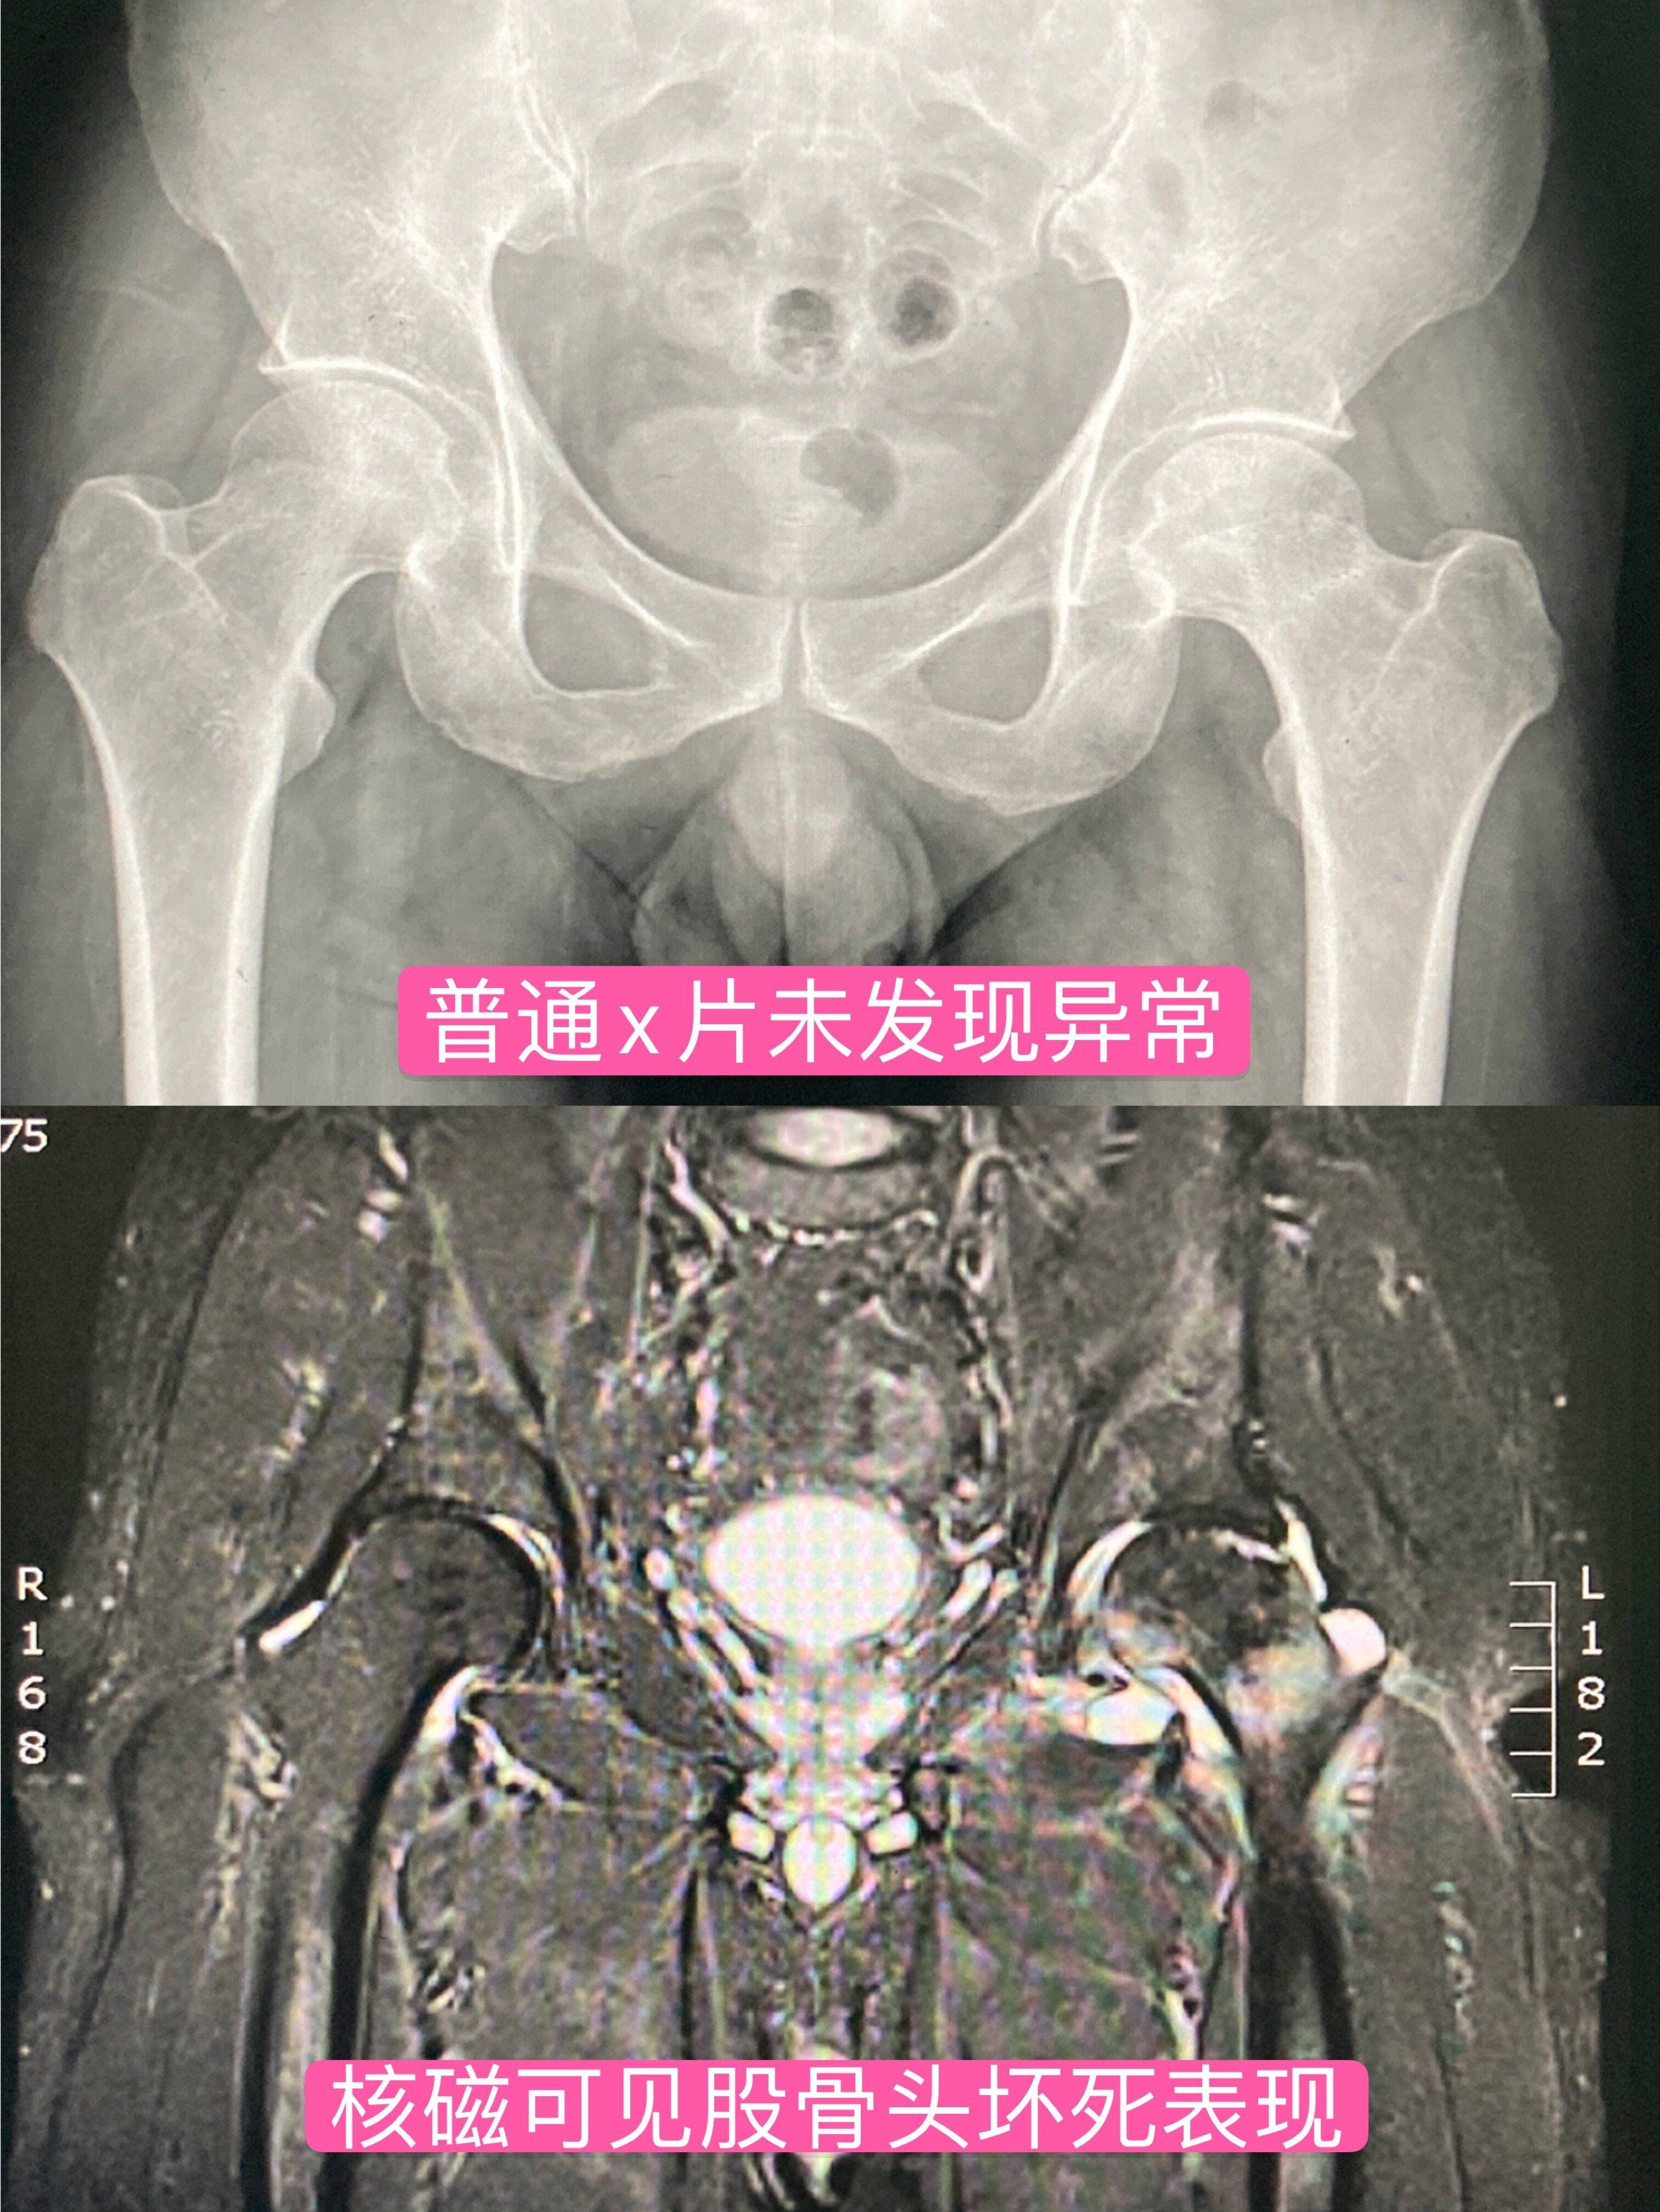 股骨头坏死MRI图片